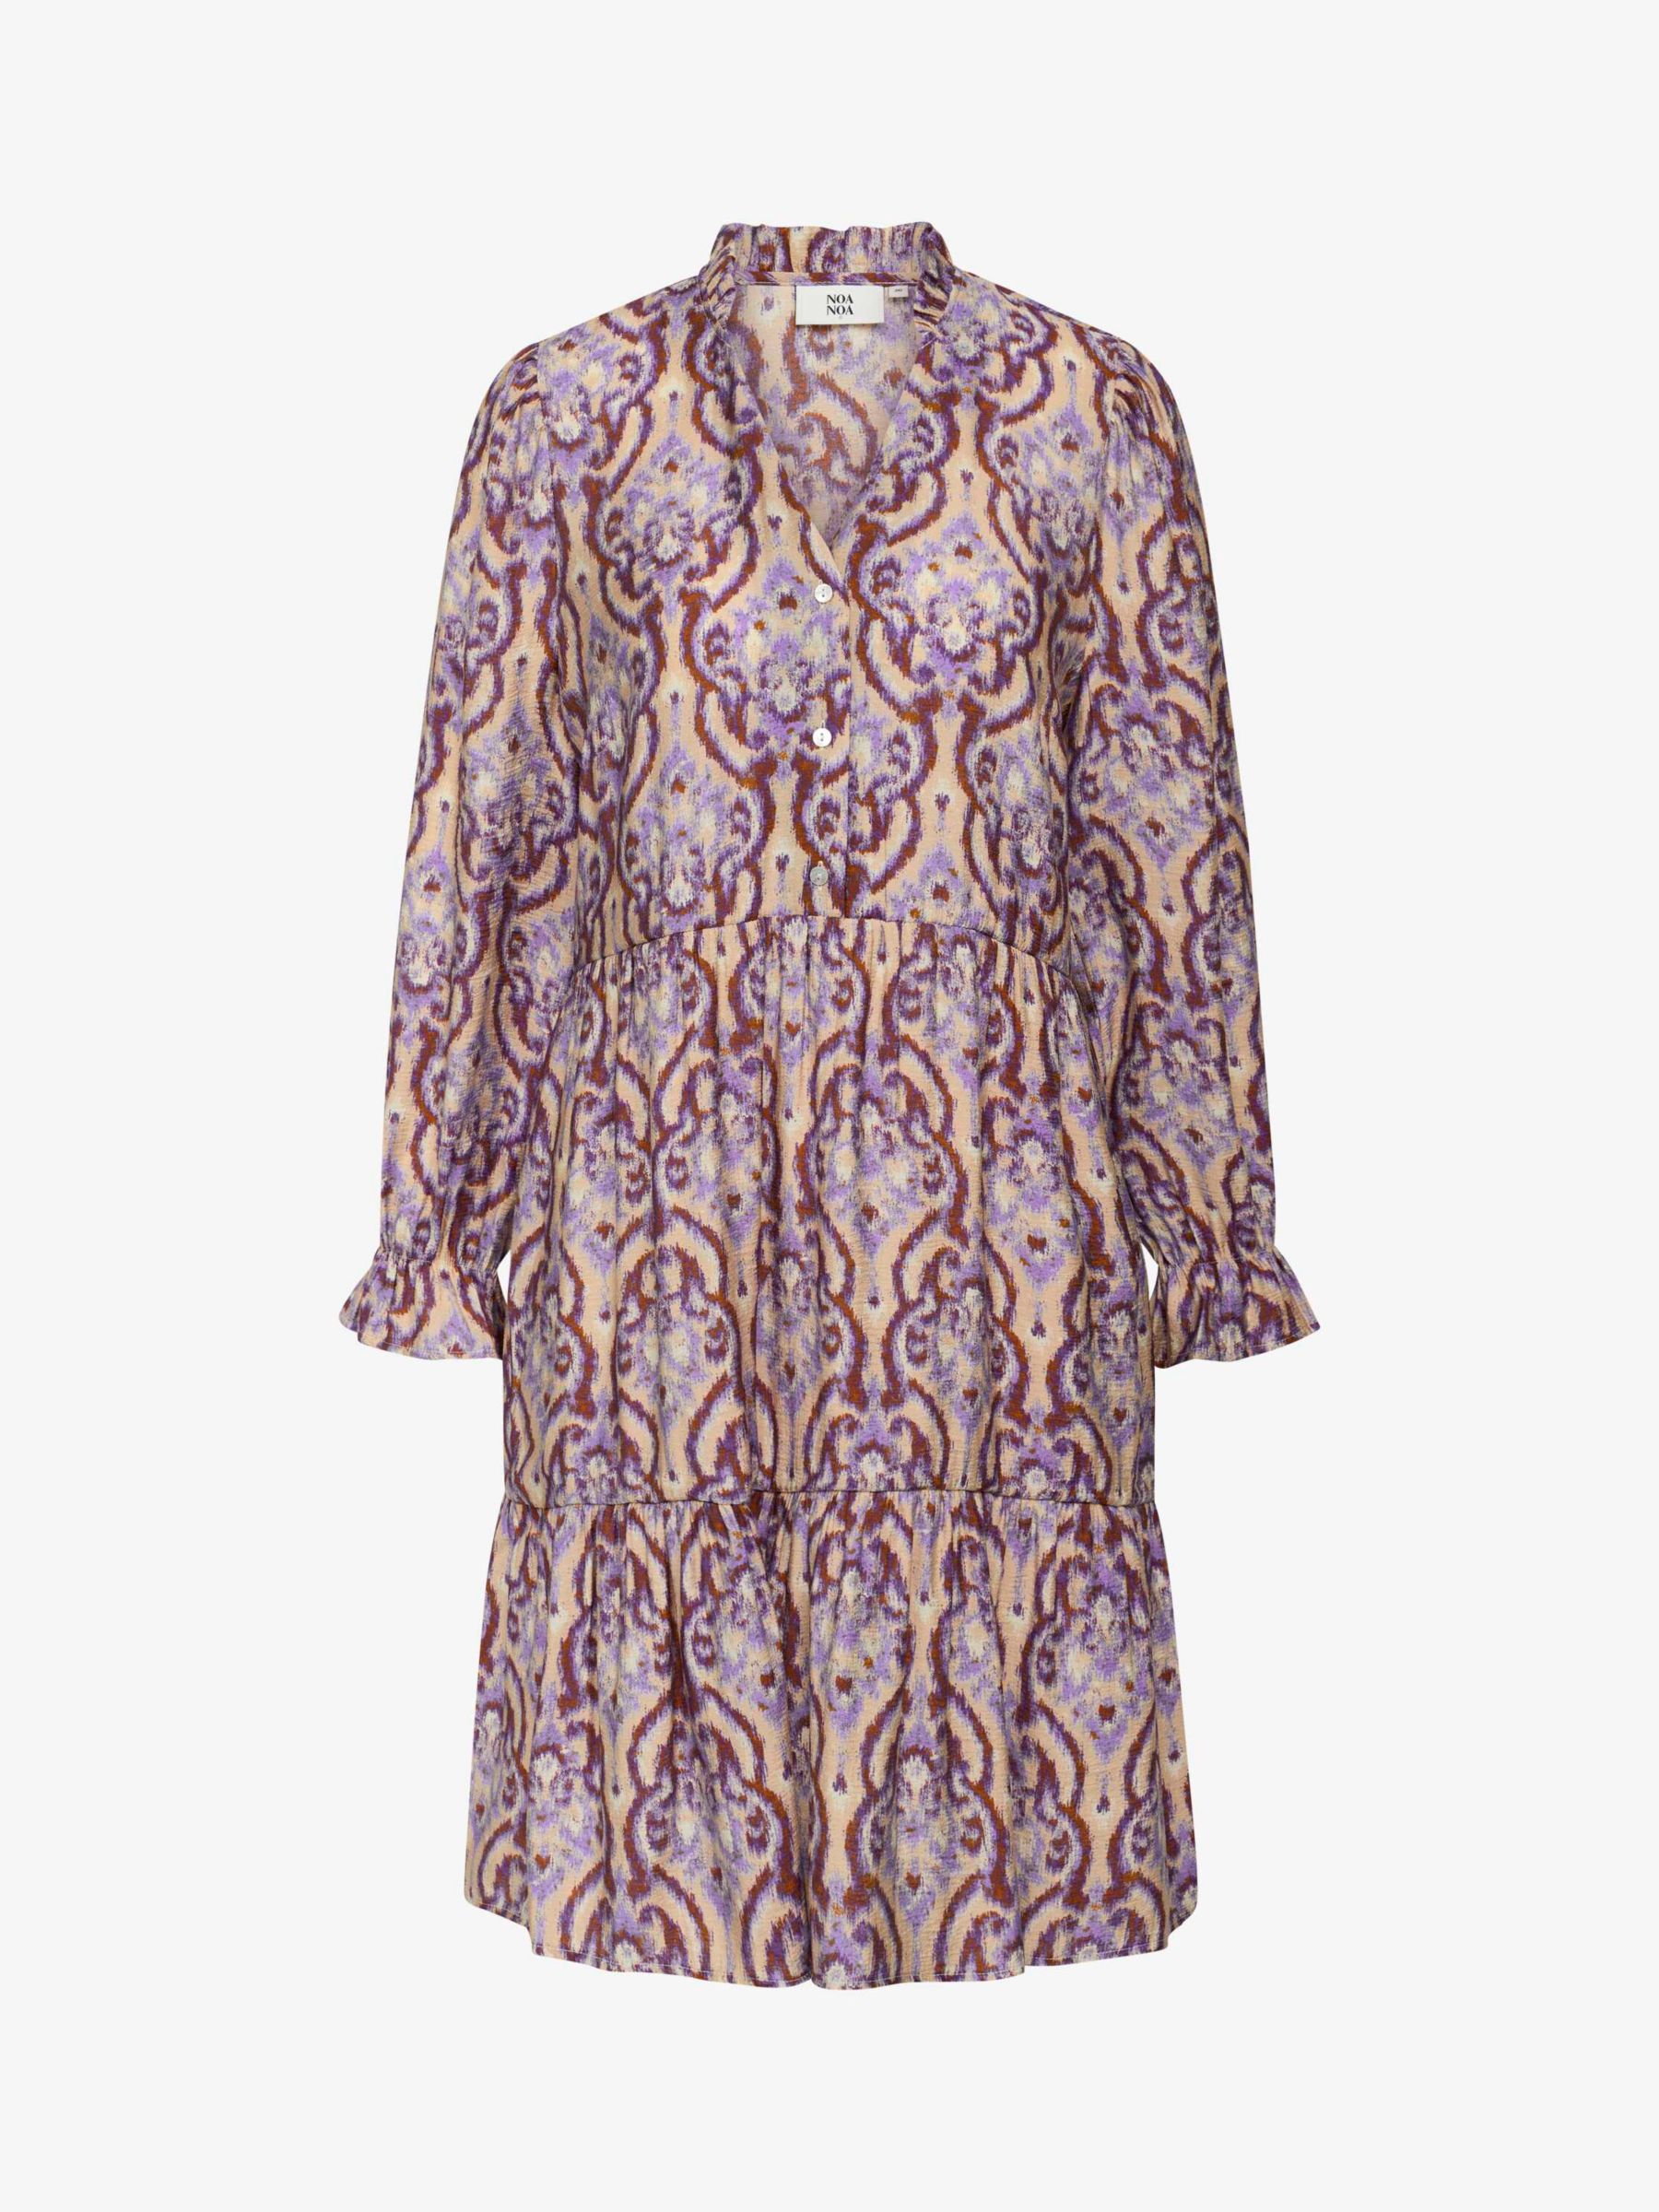 Buy Noa Noa Mirabel Abstract Print Dress, Purple/Beige Online at johnlewis.com